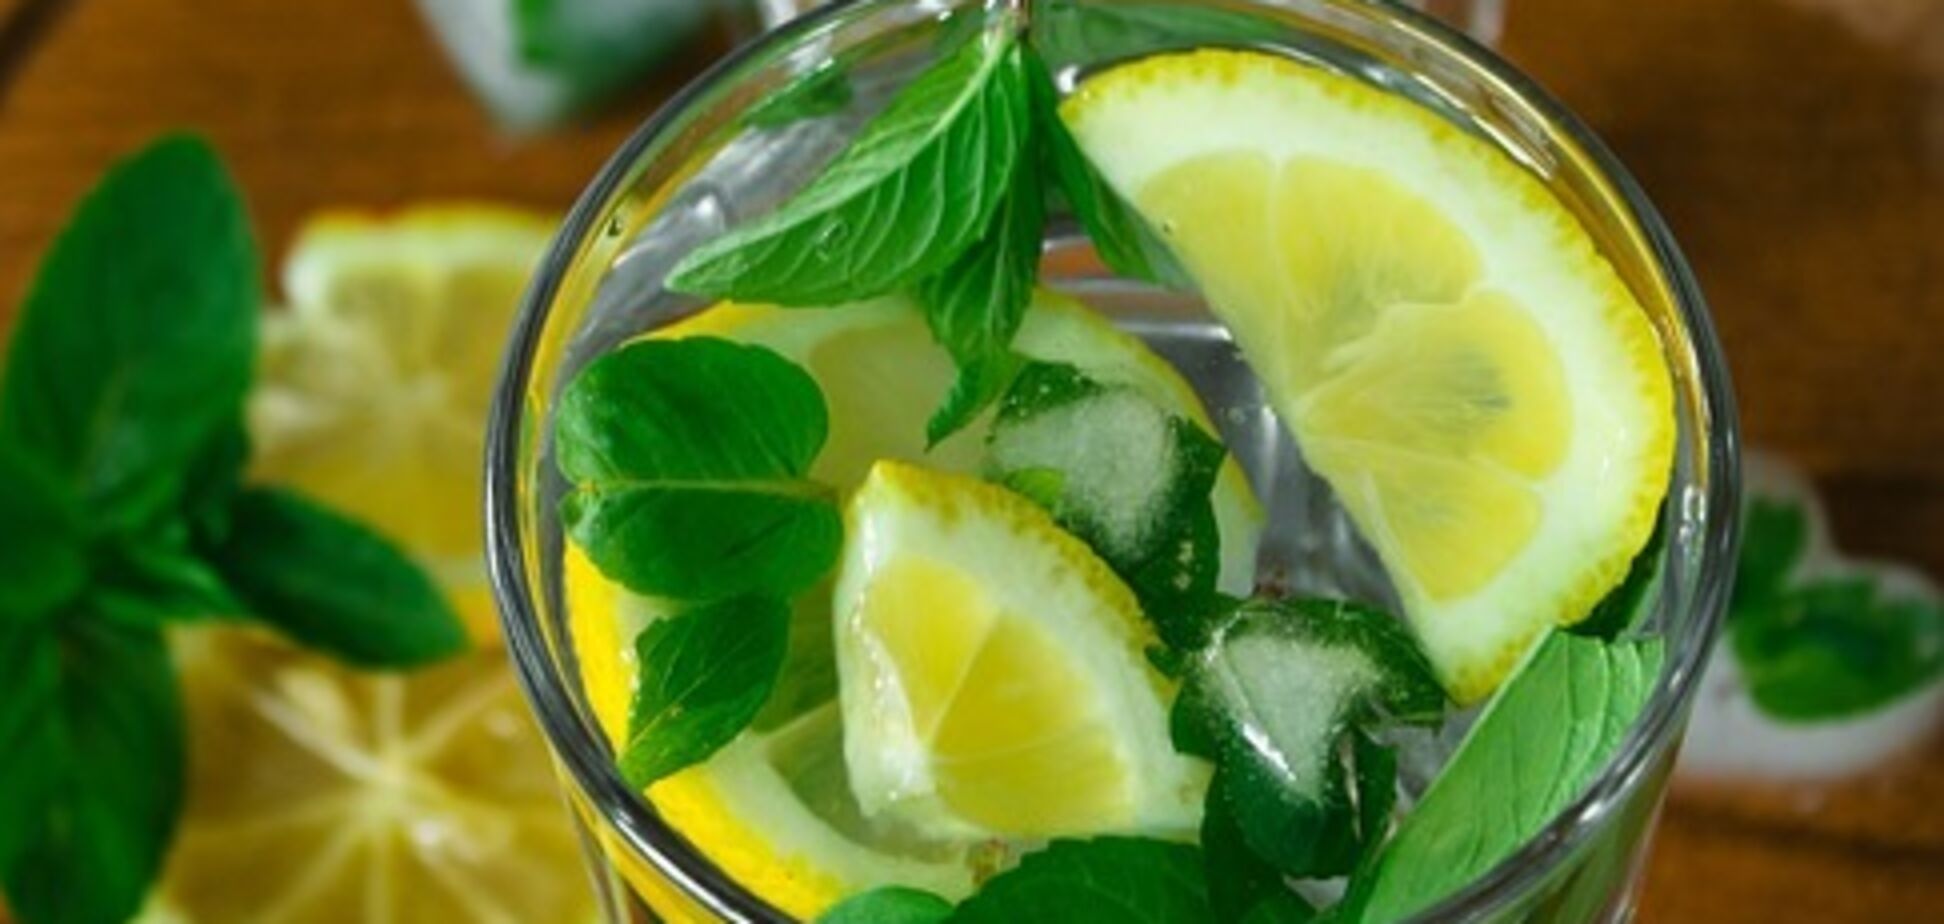 Освіжаючий мохіто: як приготувати безалкогольний напій вдома за 5 хвилин